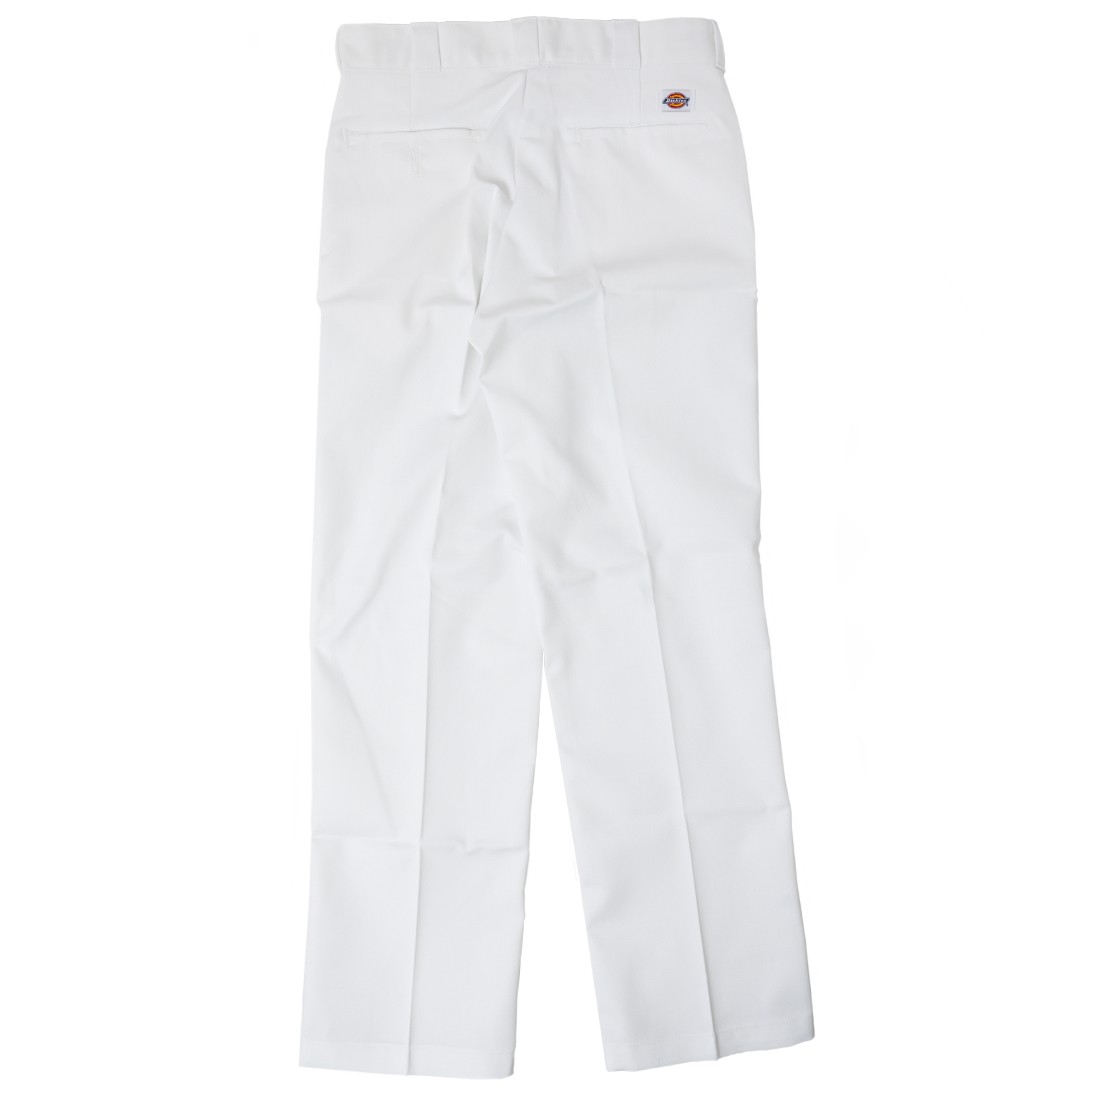 Dickies Men Original Fit 874 Work Pants white